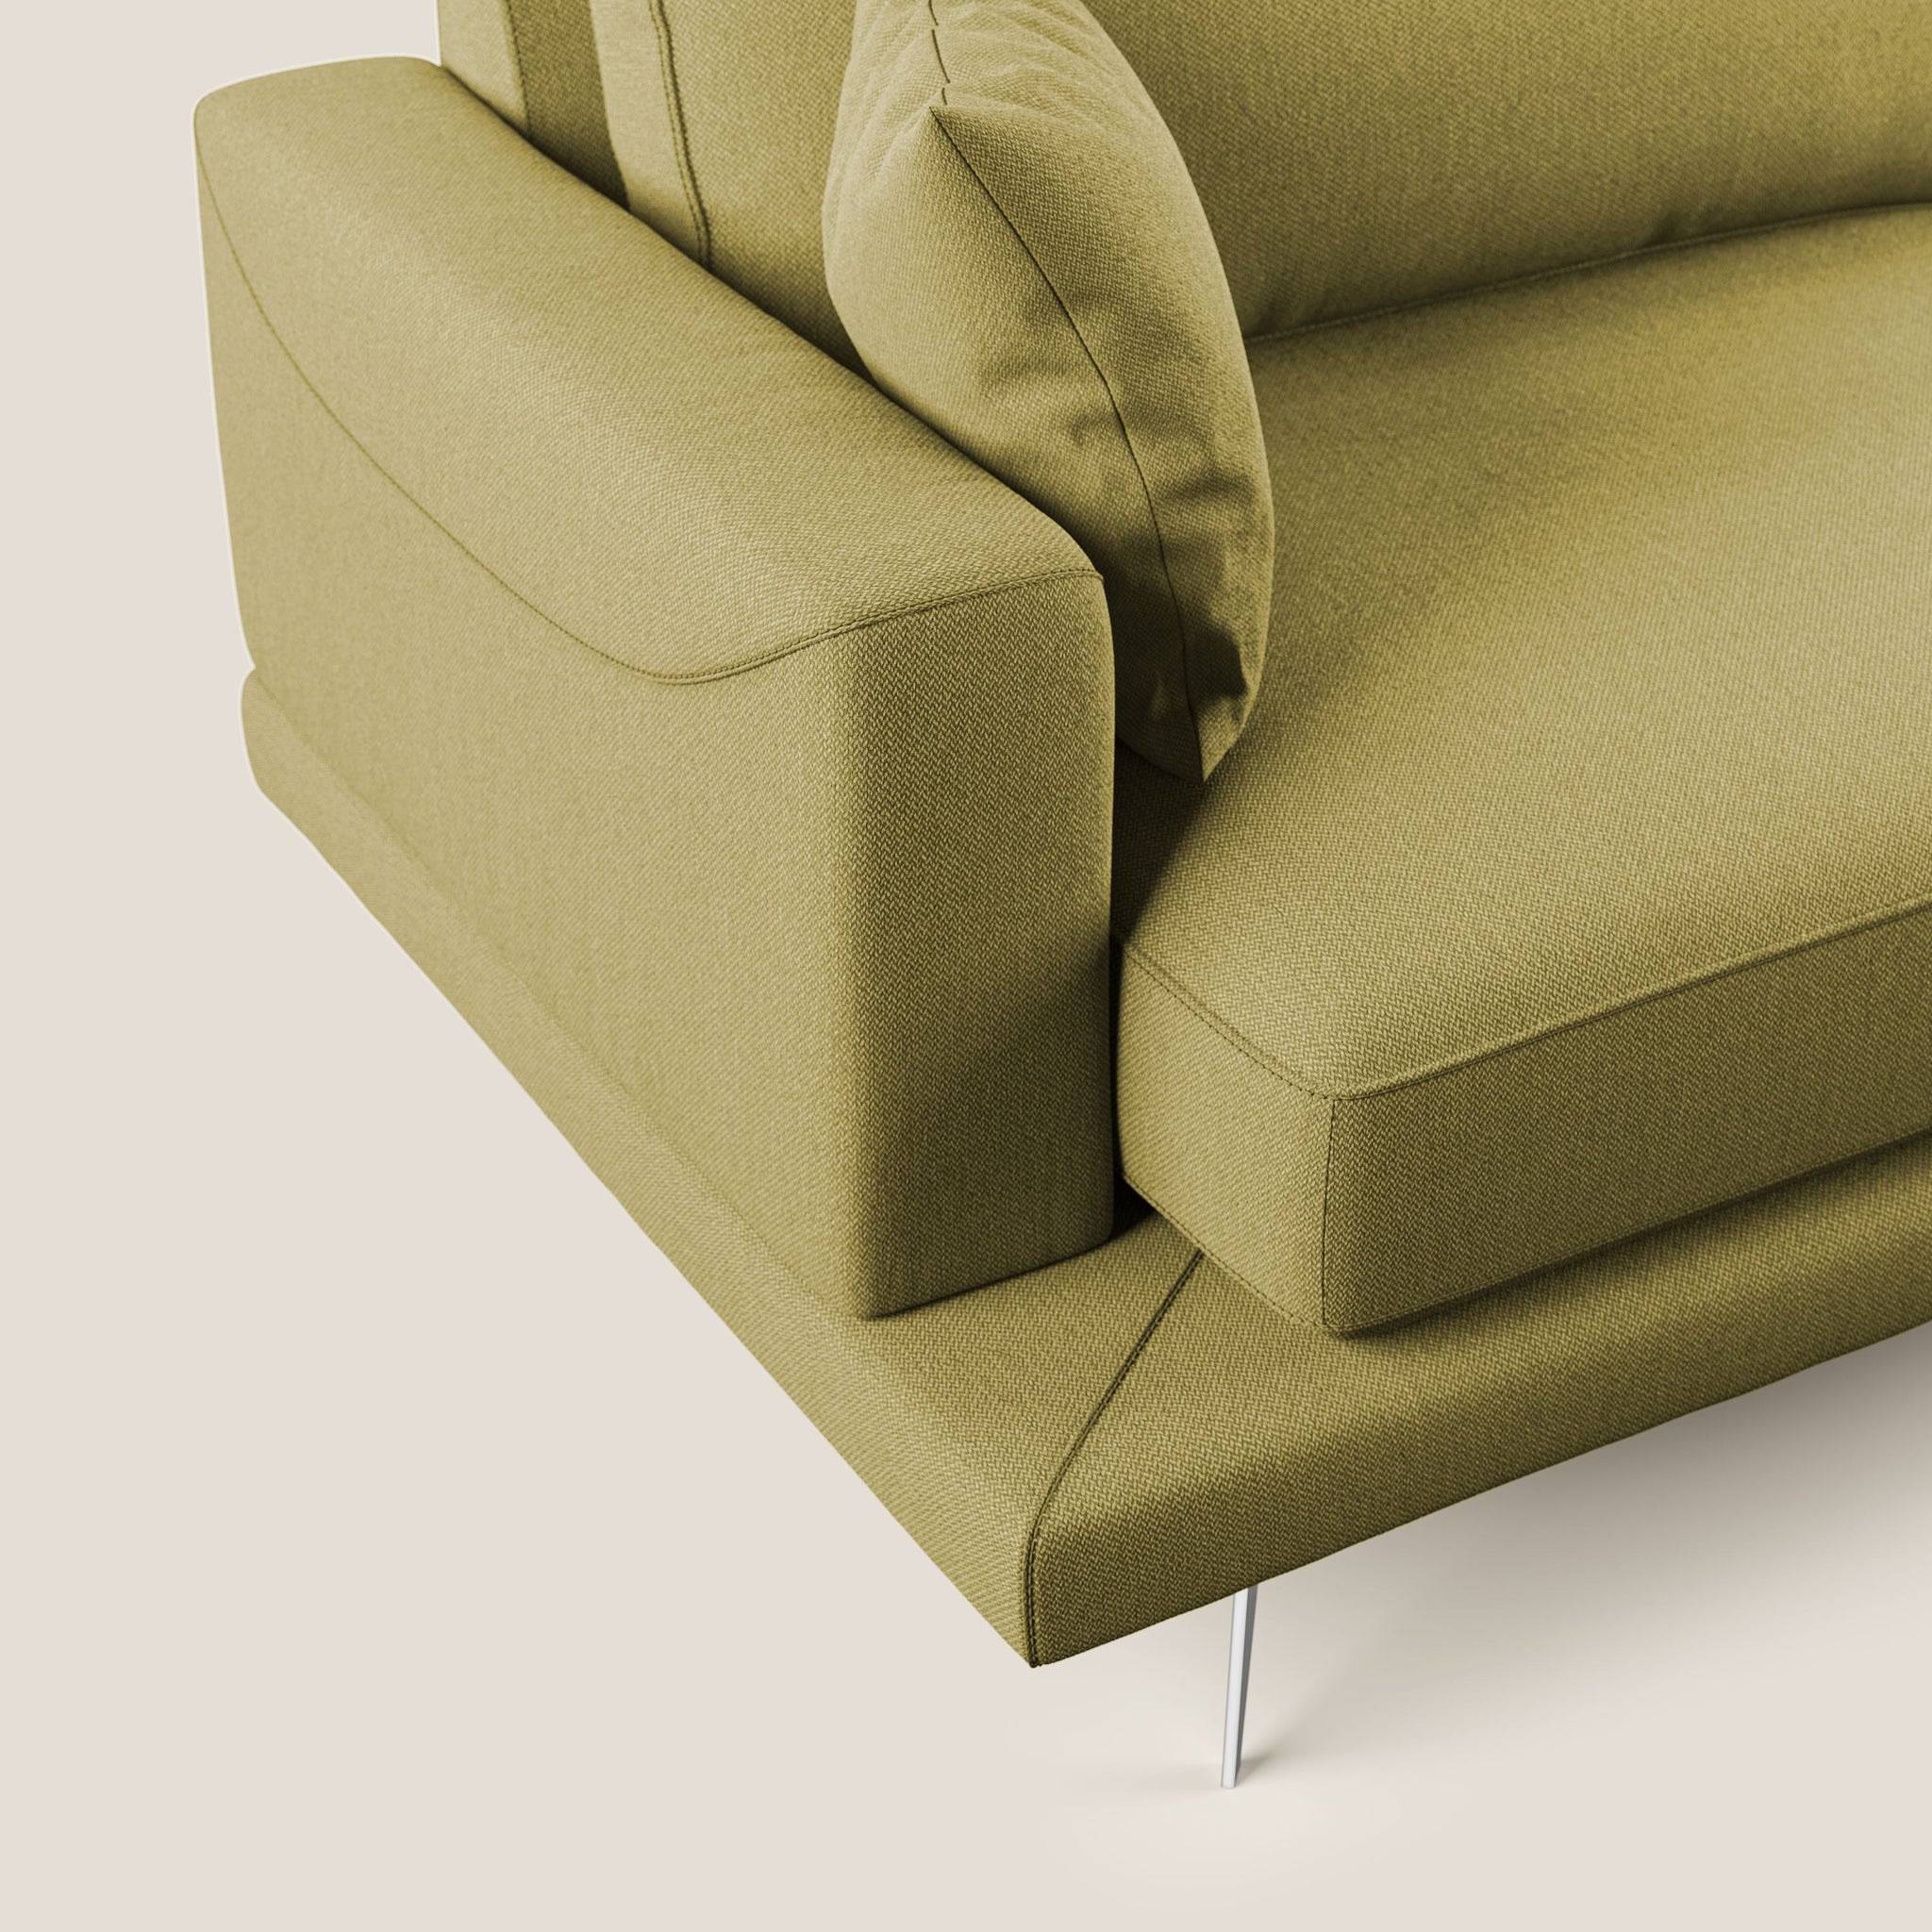 Dorian canapé d'angle moderne en tissu doux anti-tache T05